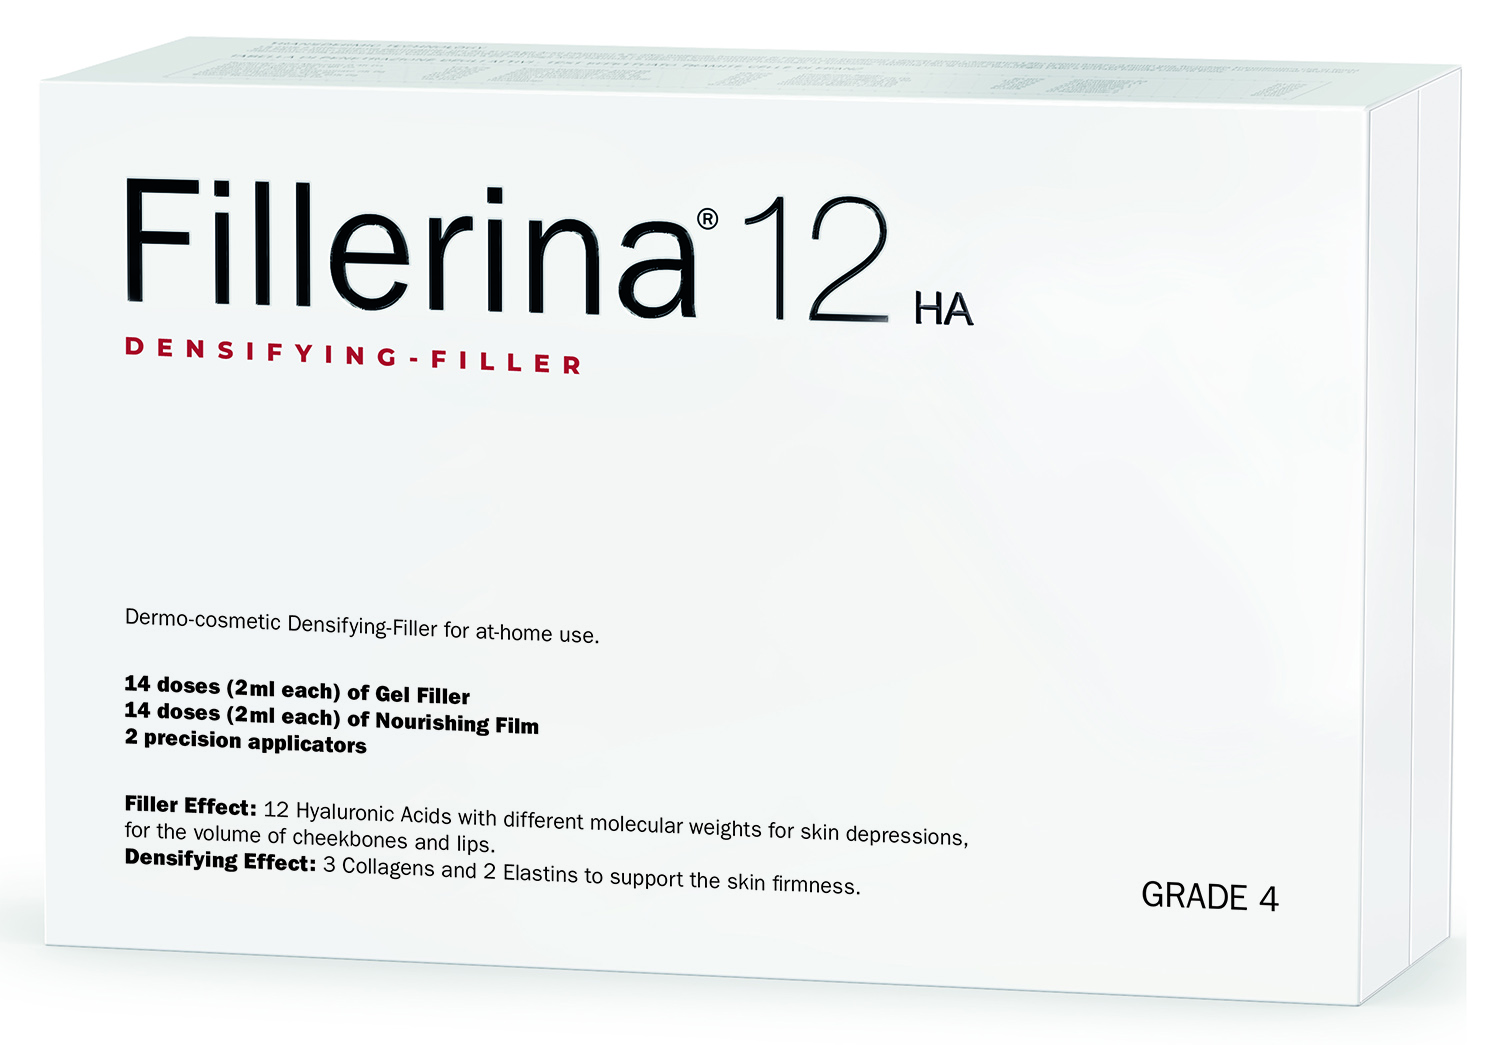 fillerina 12 ha densifying filler дермо косметический филлер с укрепляющим эффектом уровень 4 30 мл 30 мл Fillerina Дермо-косметический набор с укрепляющим эффектом Intensive уровень 4, 2 флакона х 30 мл (Fillerina, 12 HA Densifying-Filler)